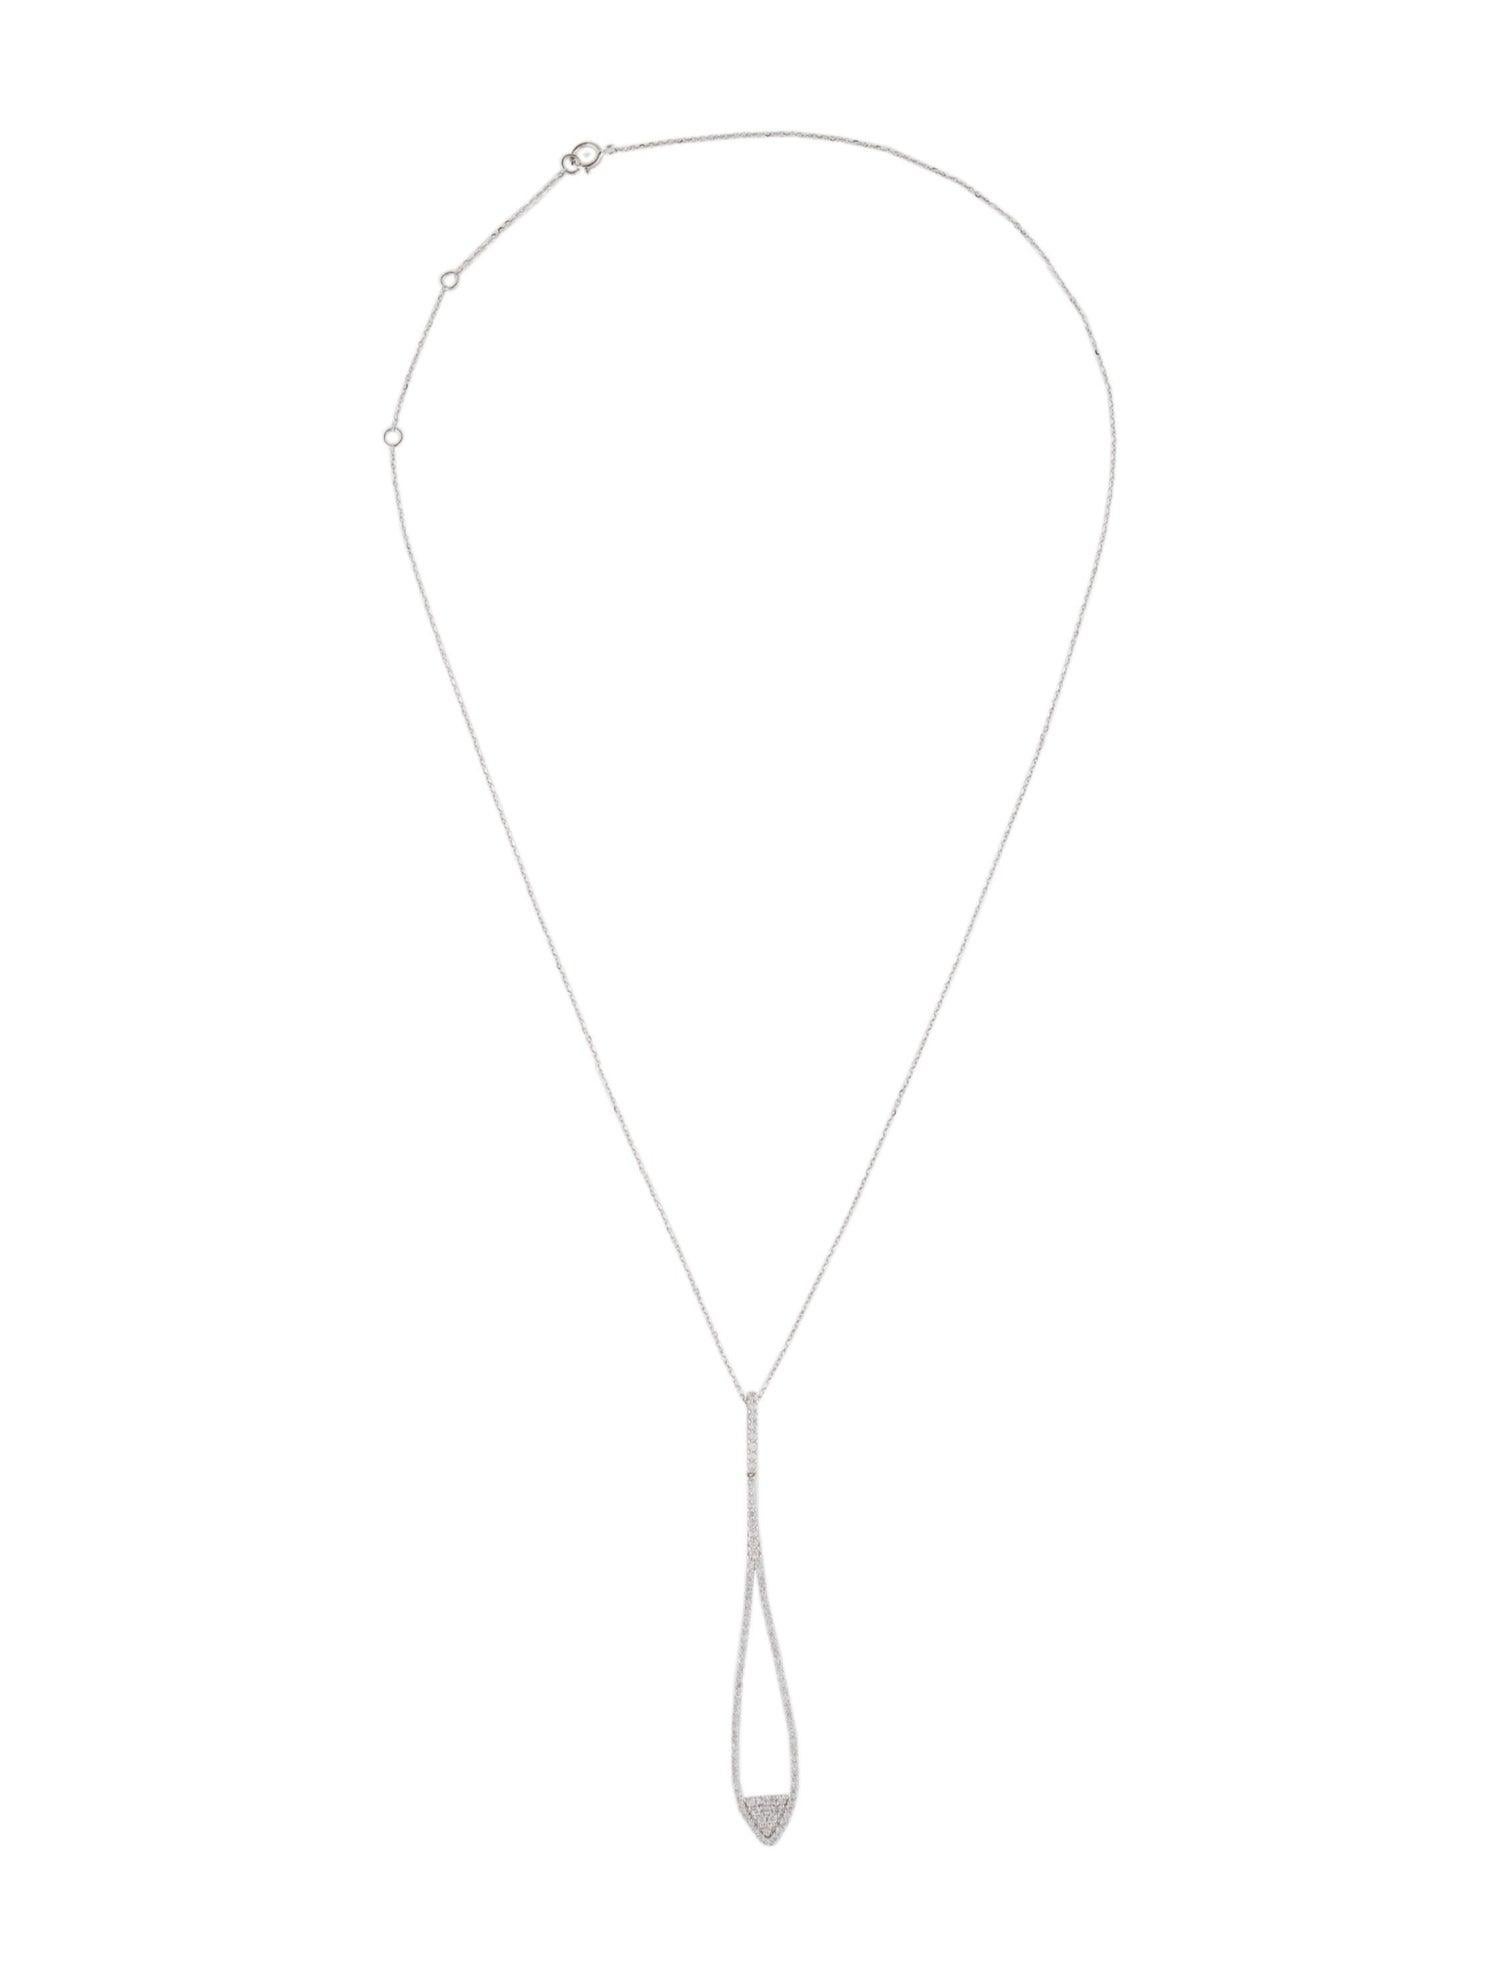 Brilliant Cut 14K Diamond Pavé Drop Pendant Necklace - Elegant Luxury Statement Piece For Sale